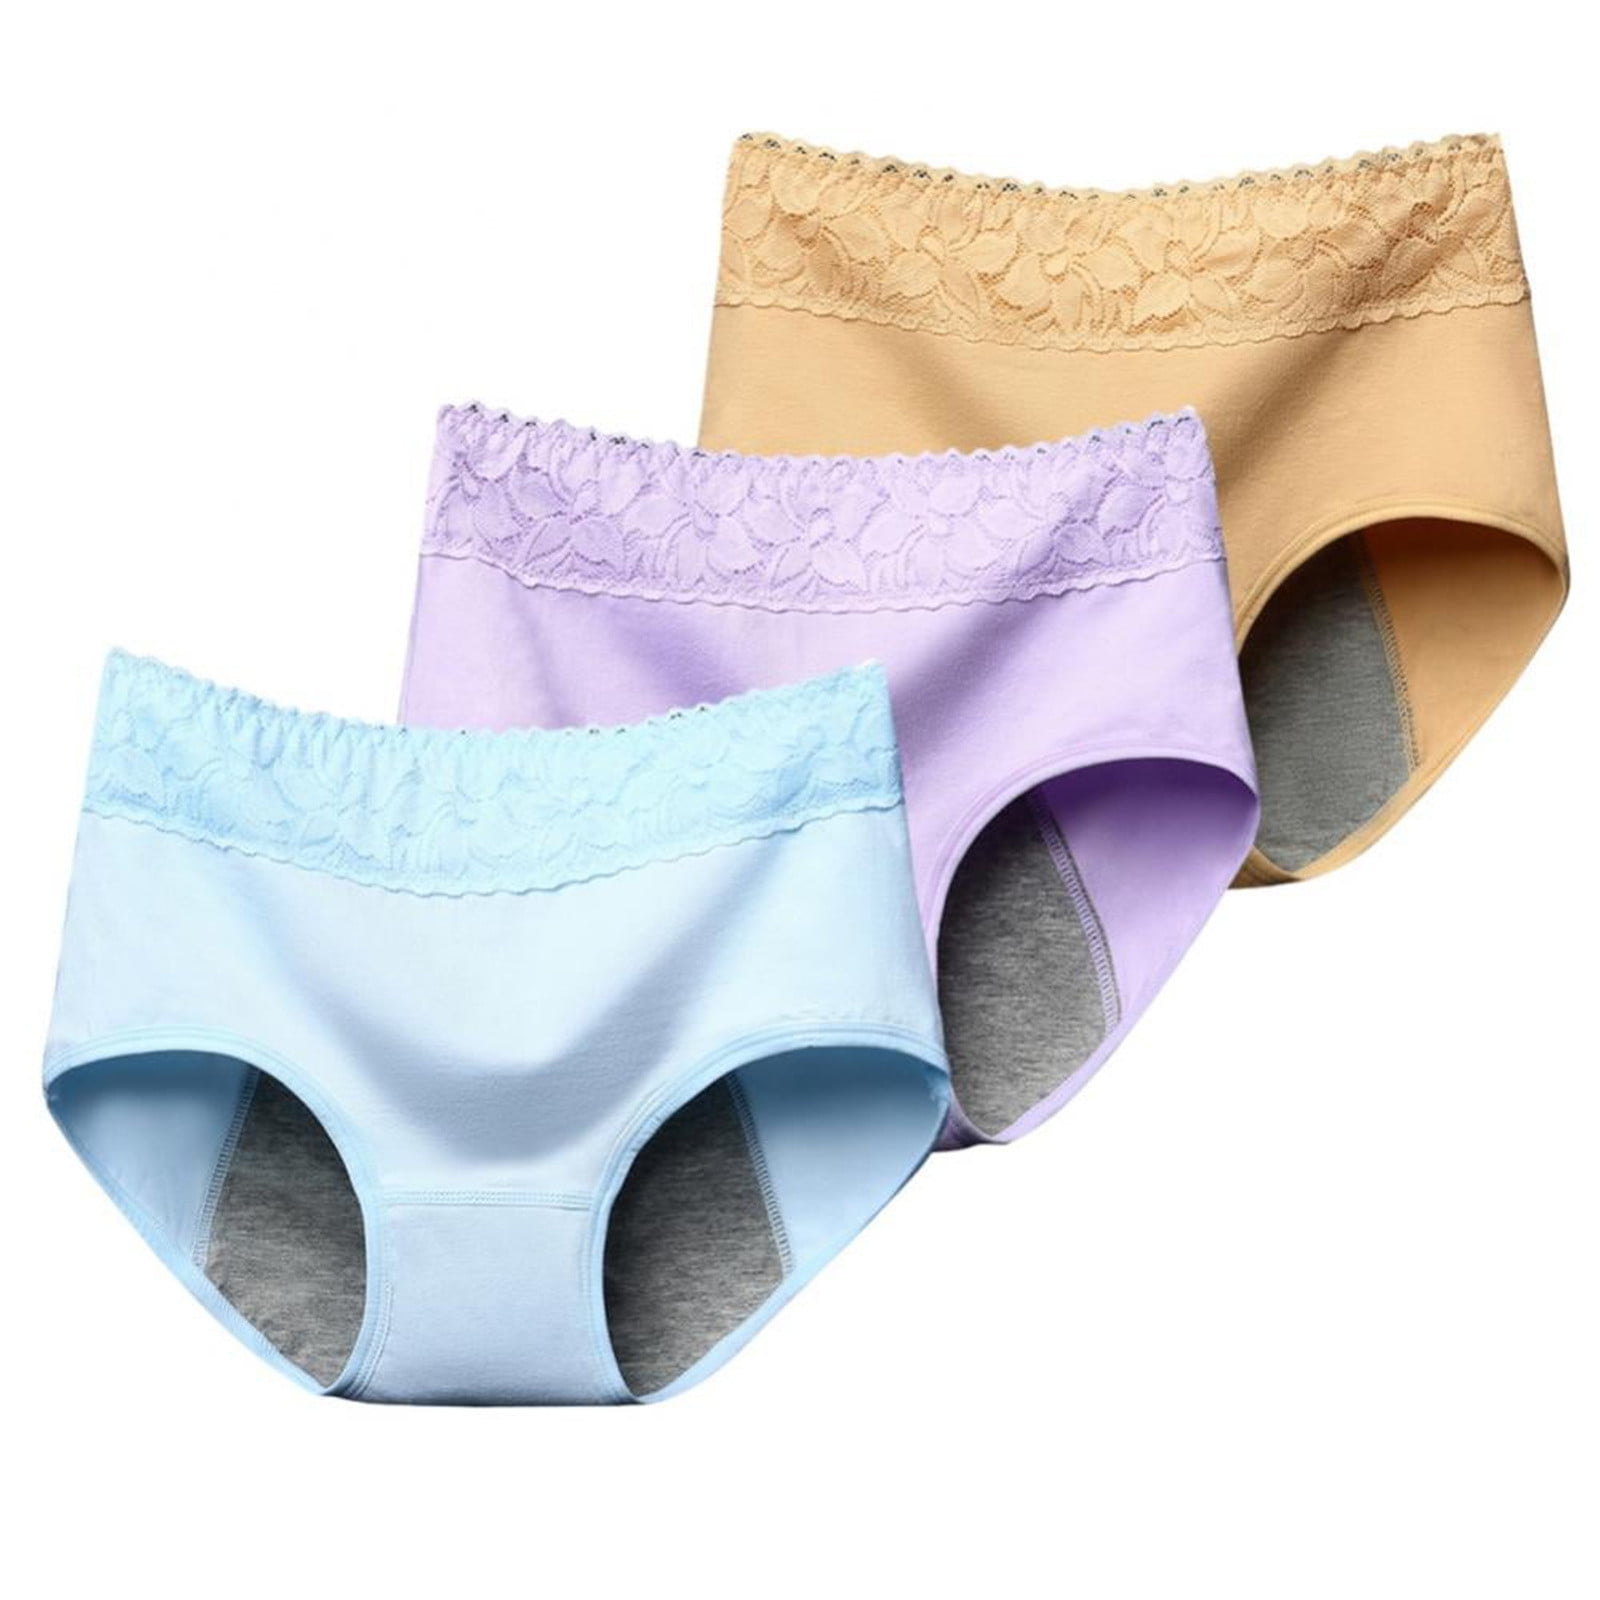 BIZIZA Womens Light Compression Briefs Underwear Full Coverage